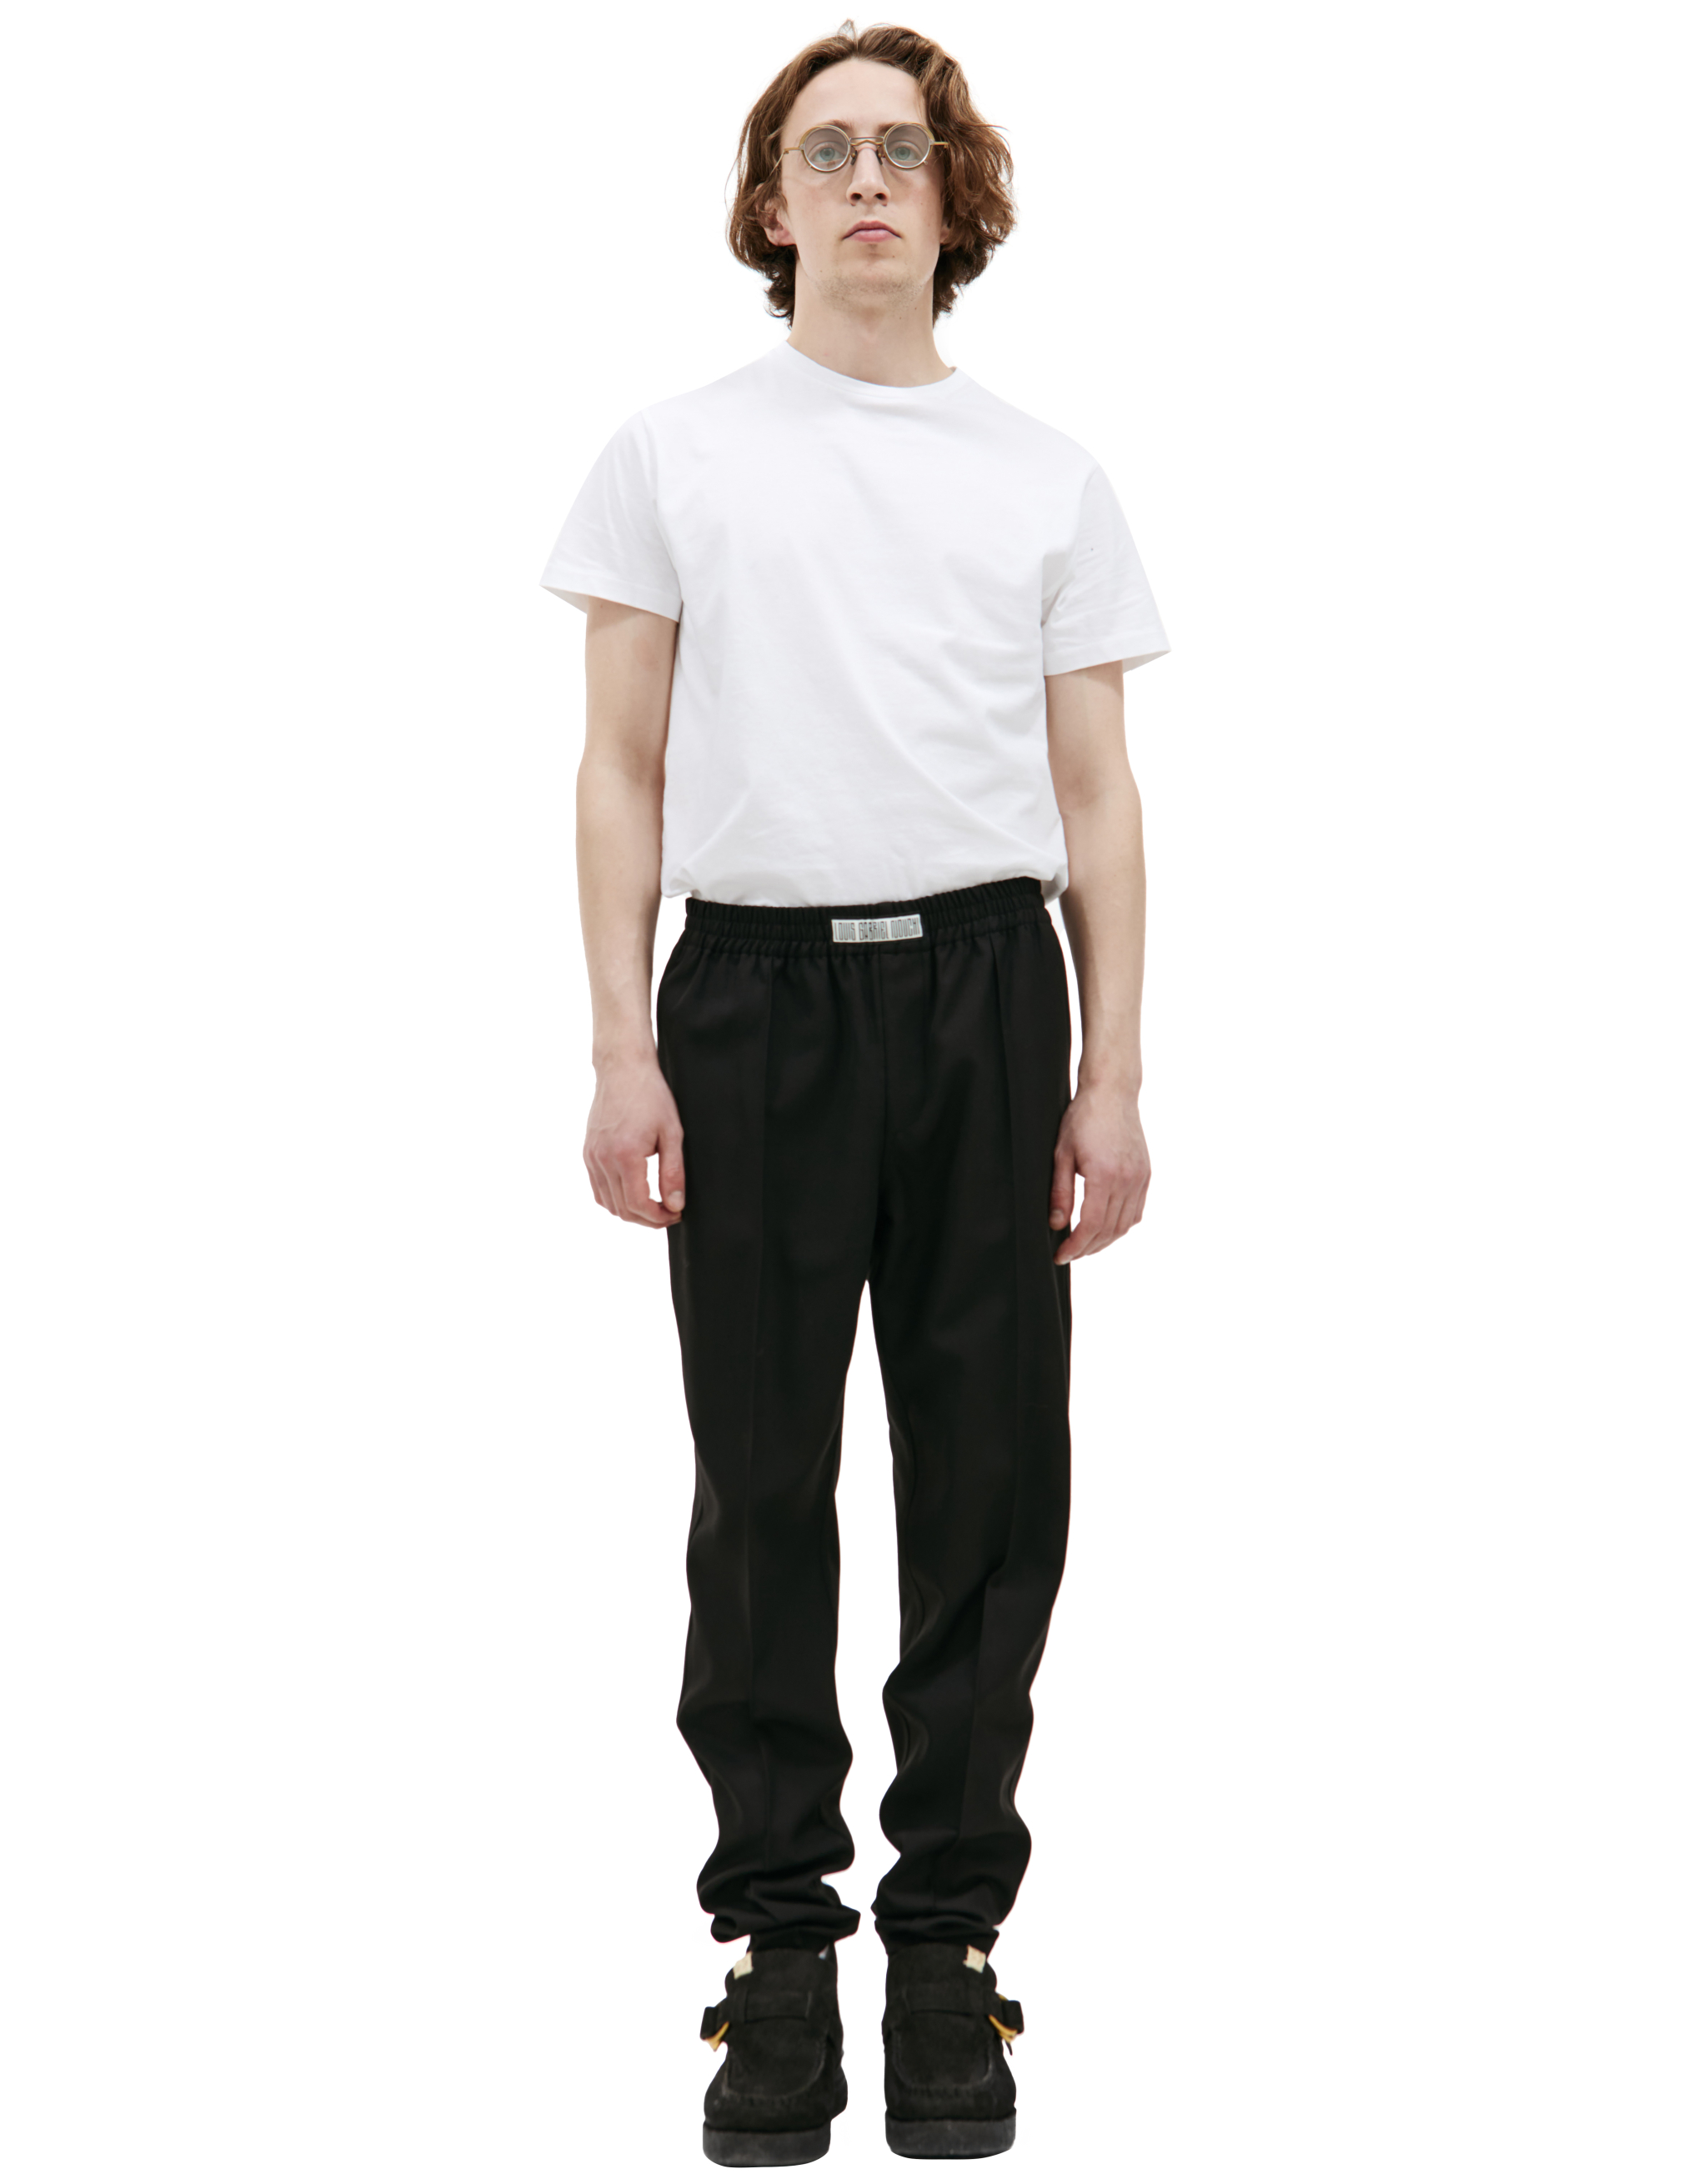 Прямые брюки со стрелками LOUIS GABRIEL NOUCHI 0711/T115/001, размер M;L;XL